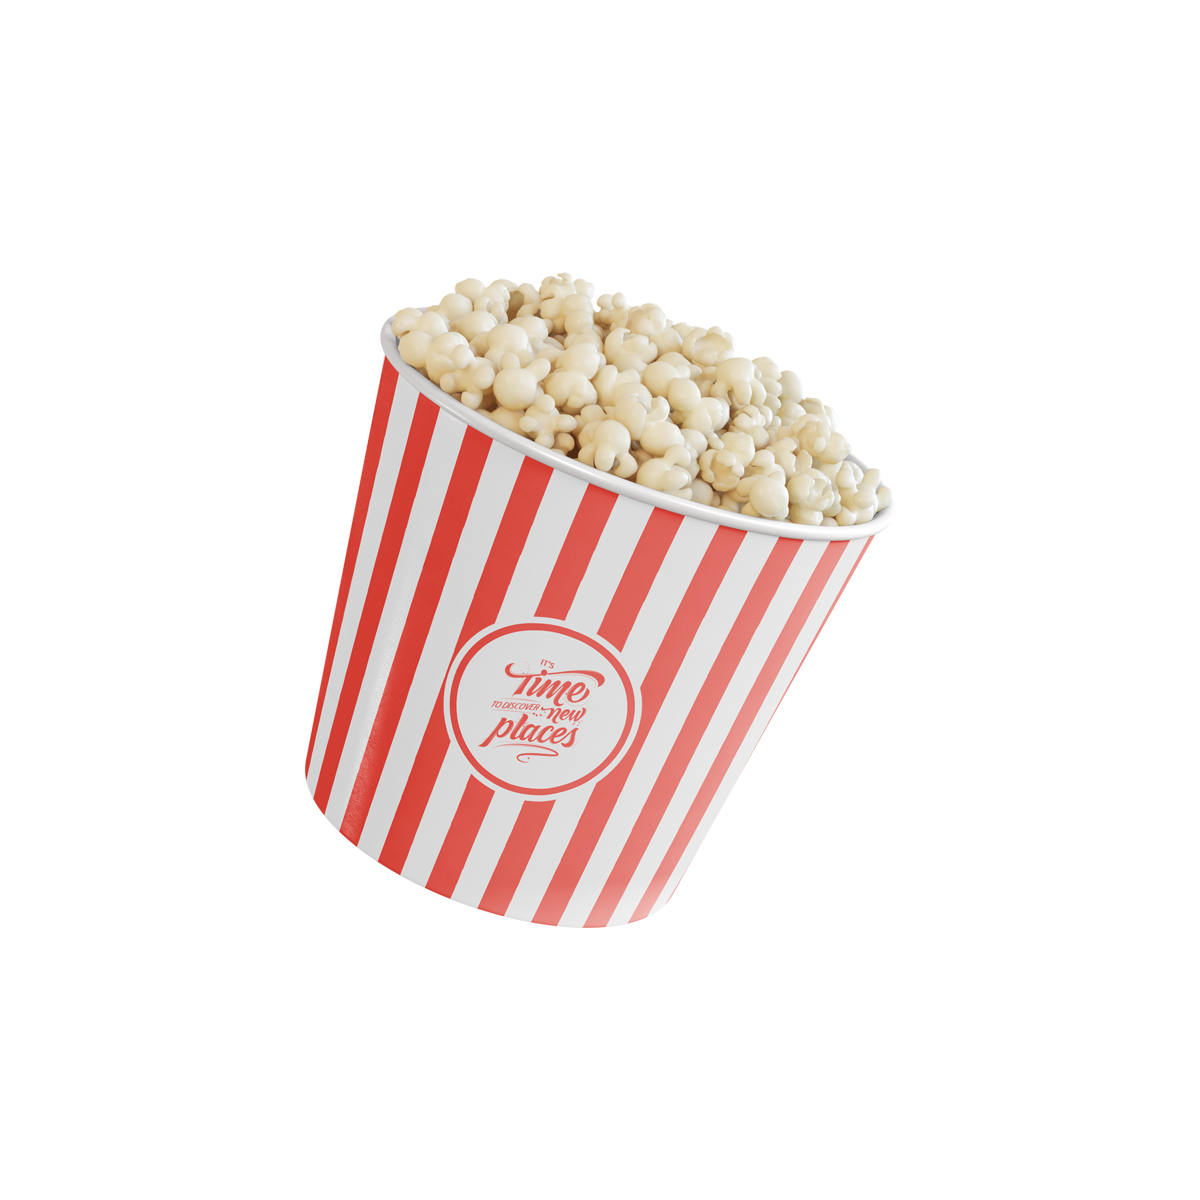 Custom Popcorn Packaging